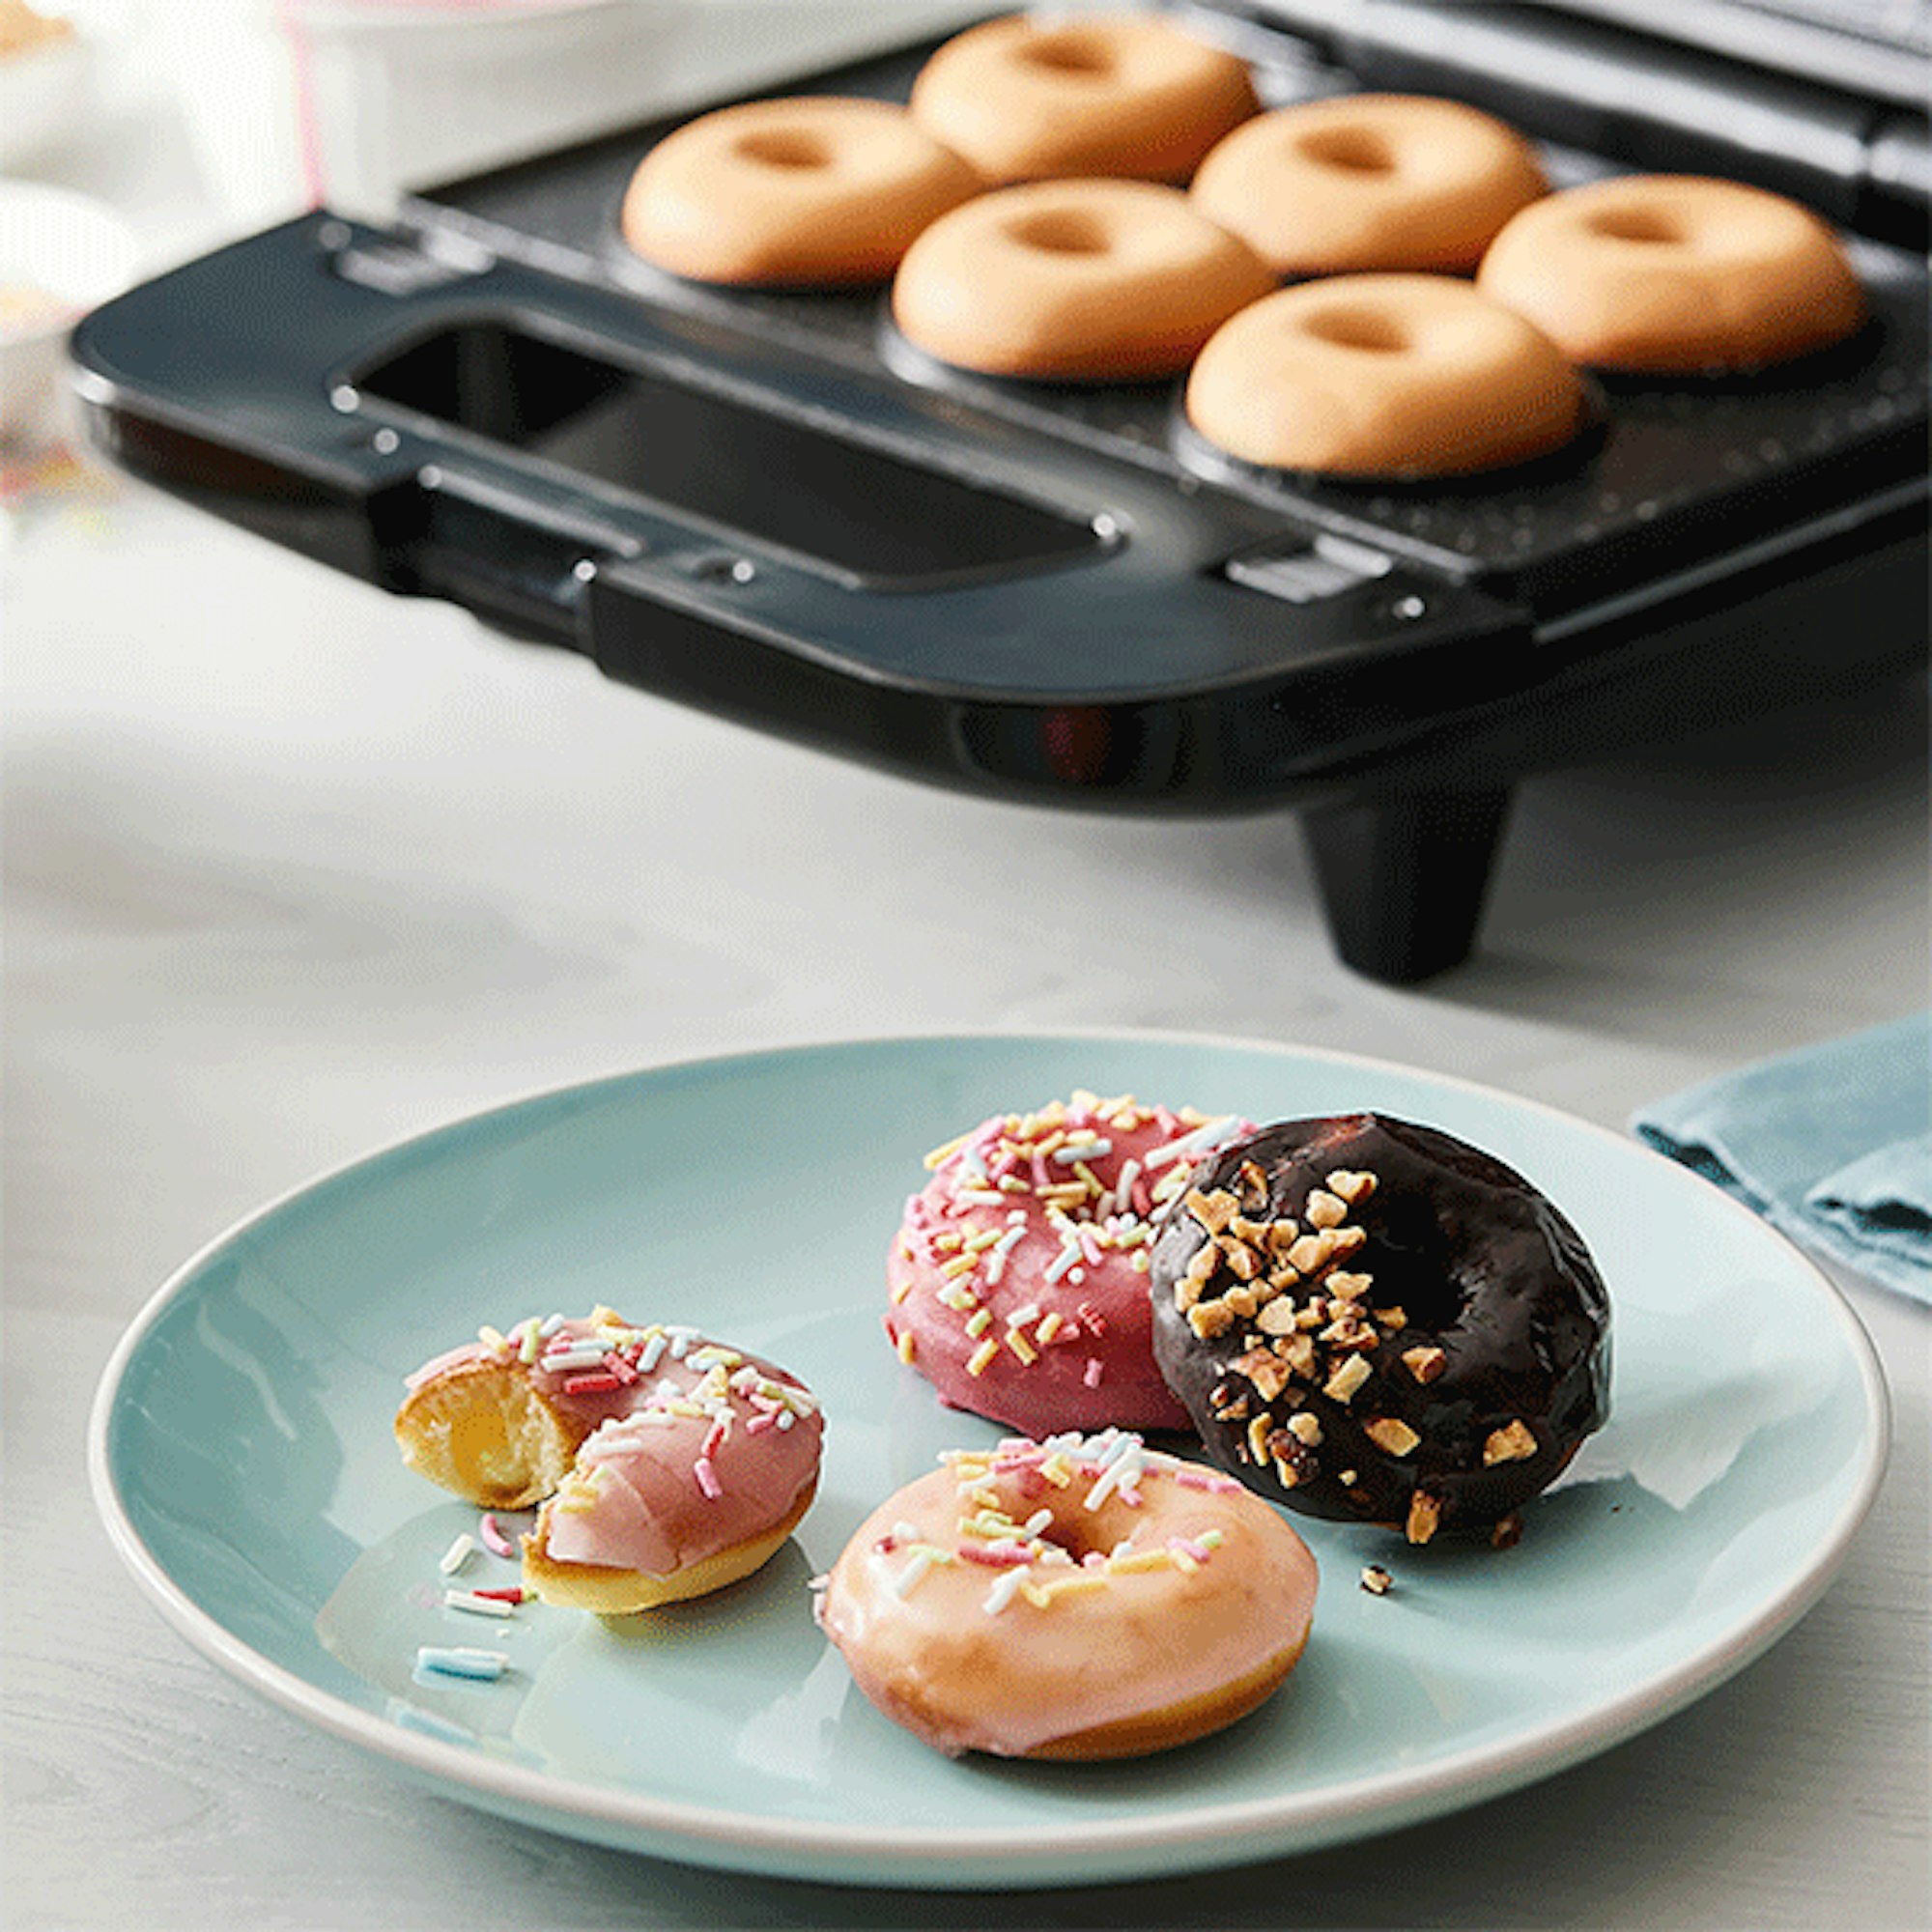 Chocolate Glaze Donuts with Rainbow Sprinkles Recipe